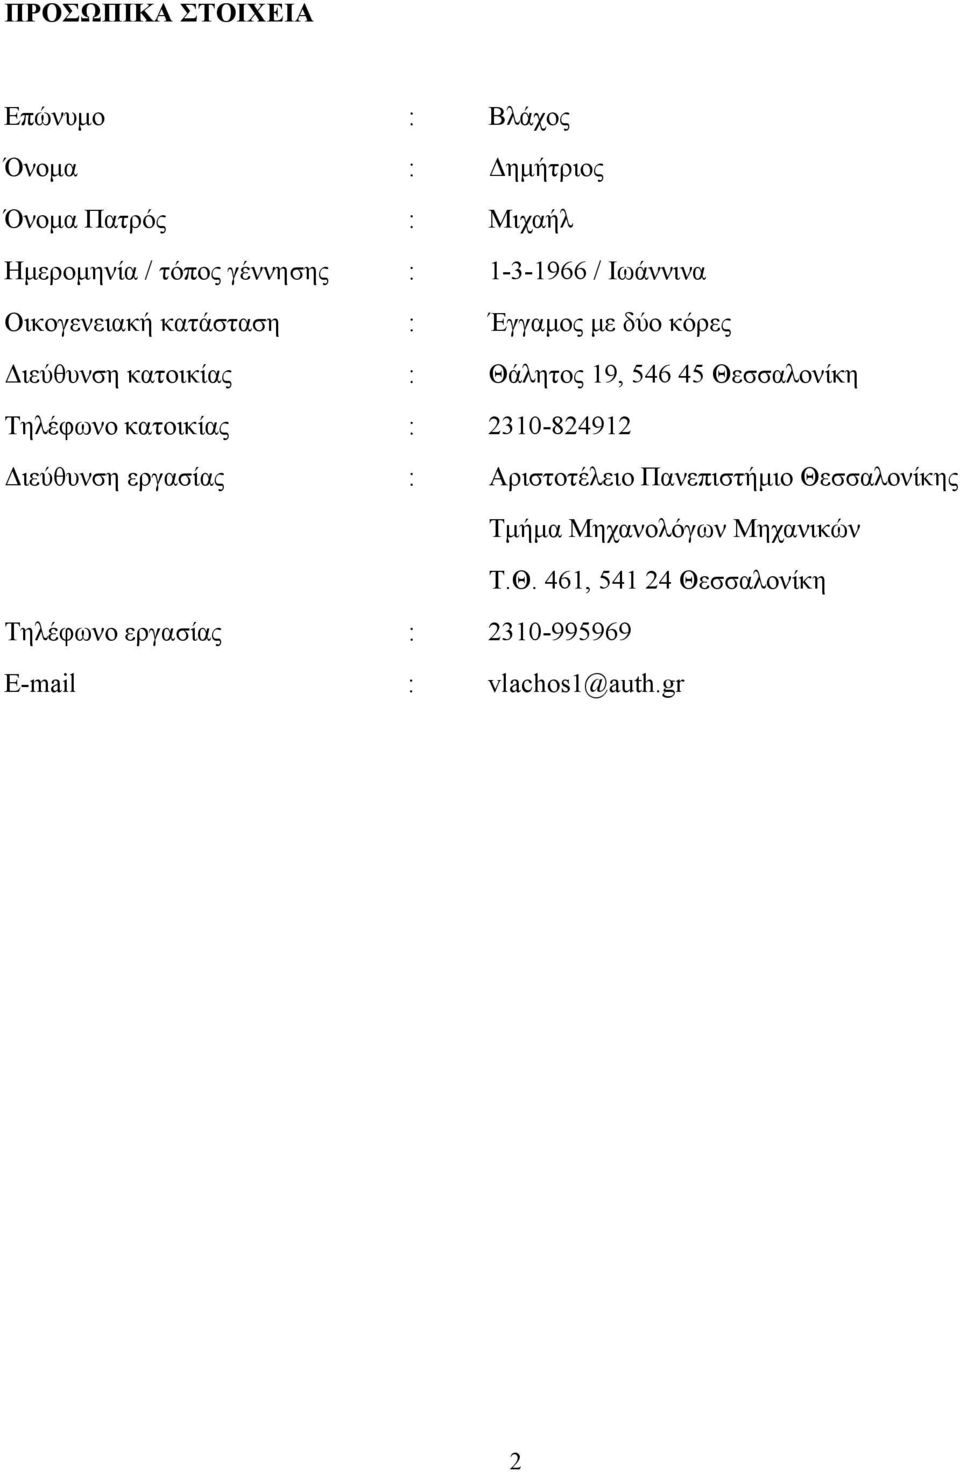 Θεσσαλονίκη Τηλέφωνο κατοικίας : 2310-824912 Διεύθυνση εργασίας : Αριστοτέλειο Πανεπιστήμιο Θεσσαλονίκης